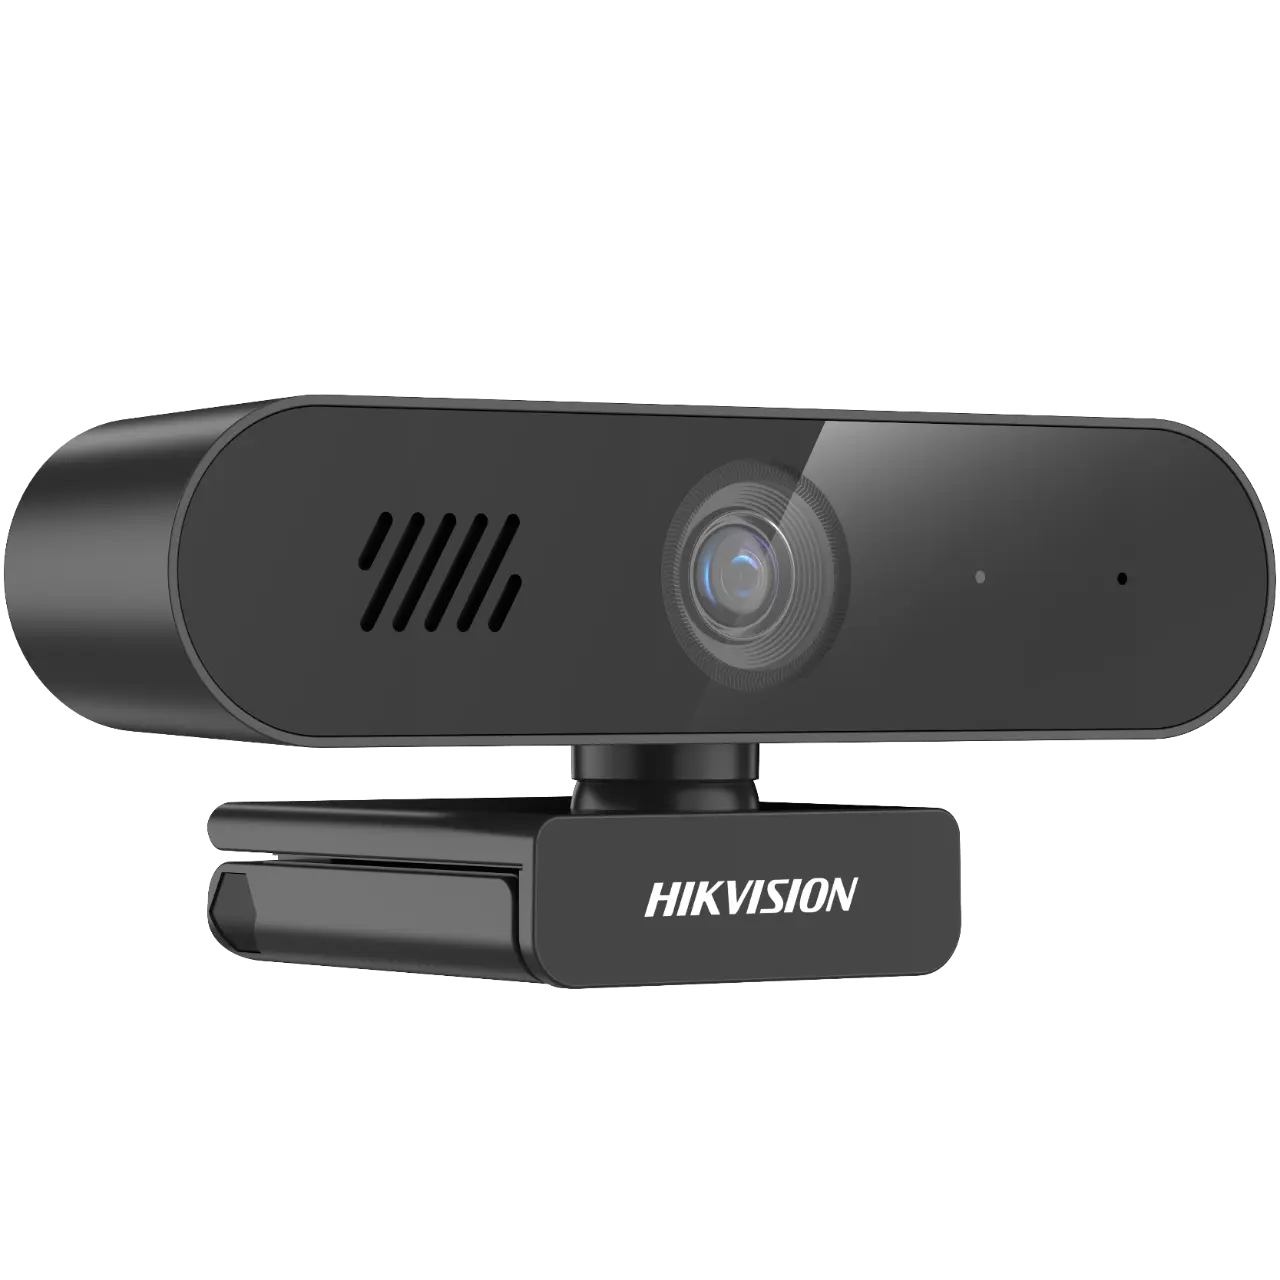 Вебкамера Hikvision DS-UA12, 2 MP, 1920x1080, встроенный микрофон, USB 3.0, черный (DS-UA12)